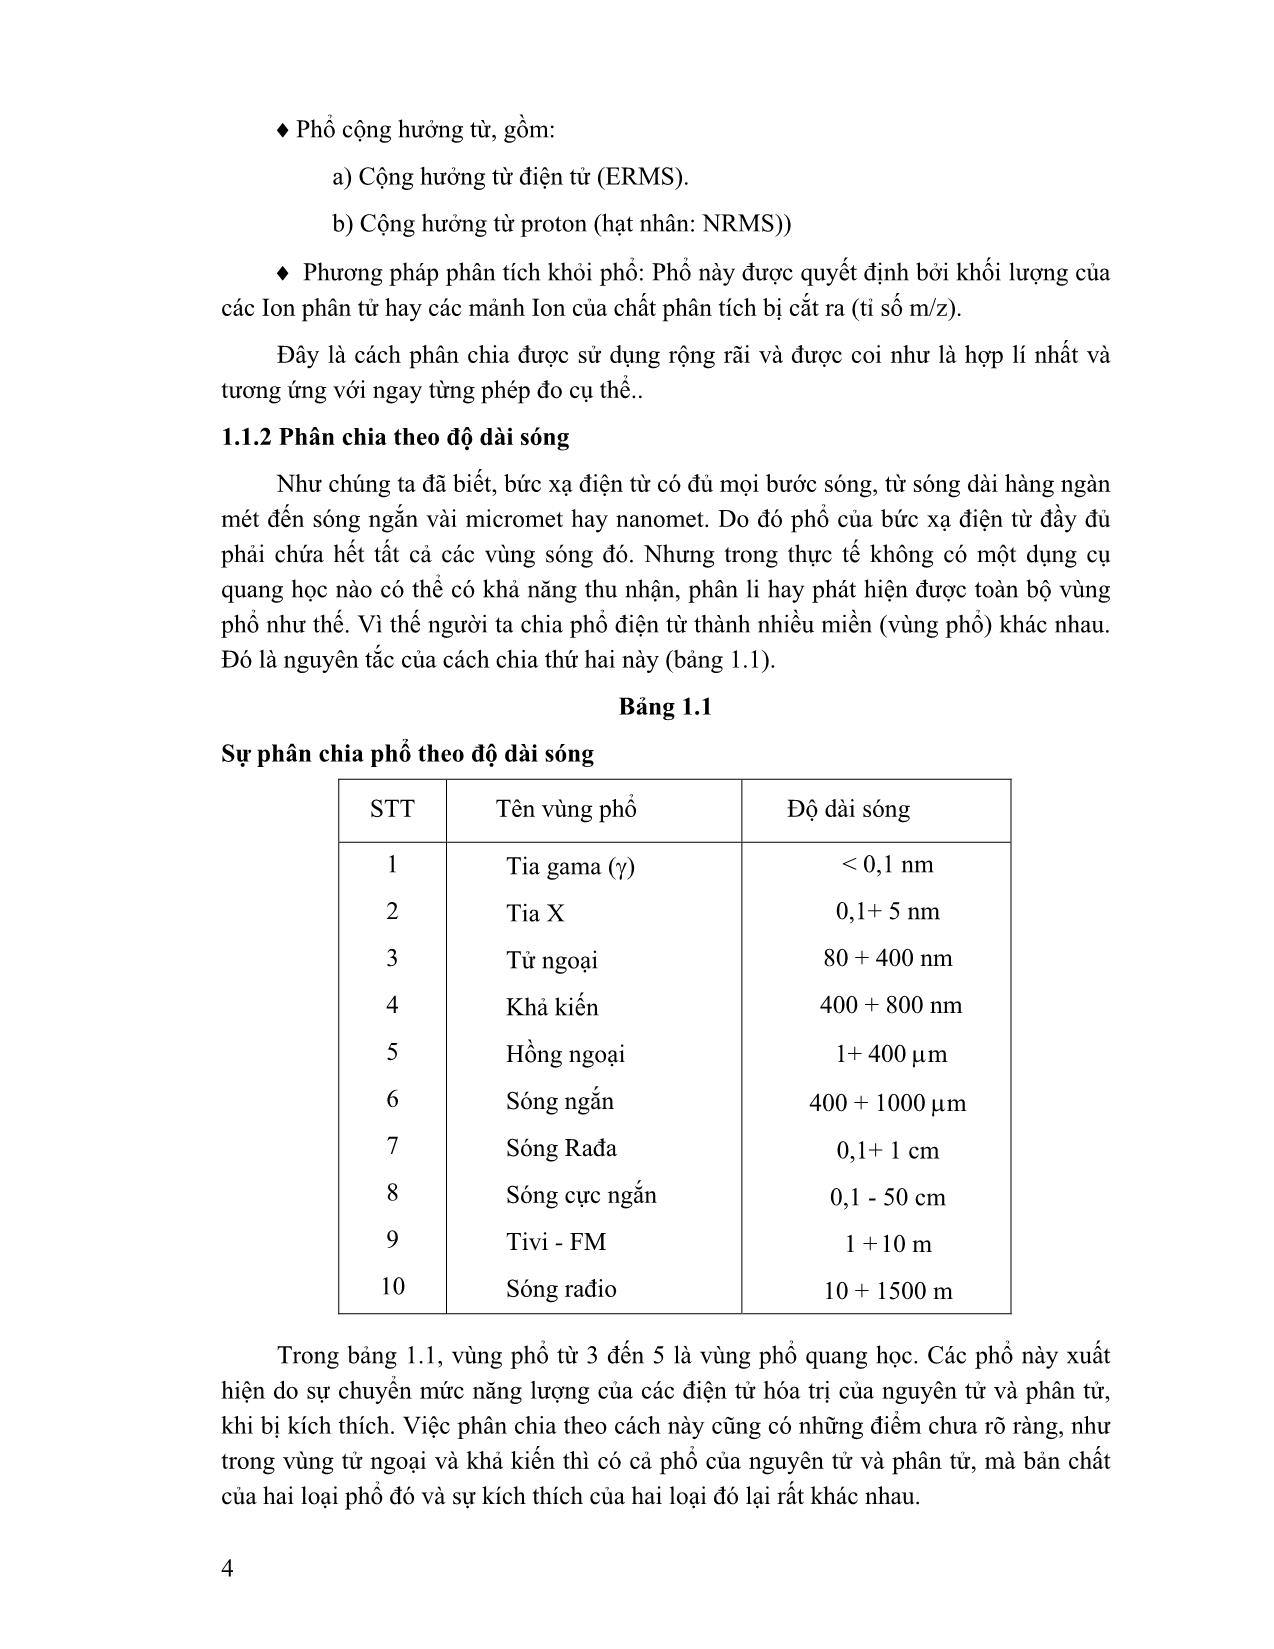 Giáo trình Phương pháp phân tích phổ nguyên tử (Phần 1) trang 2